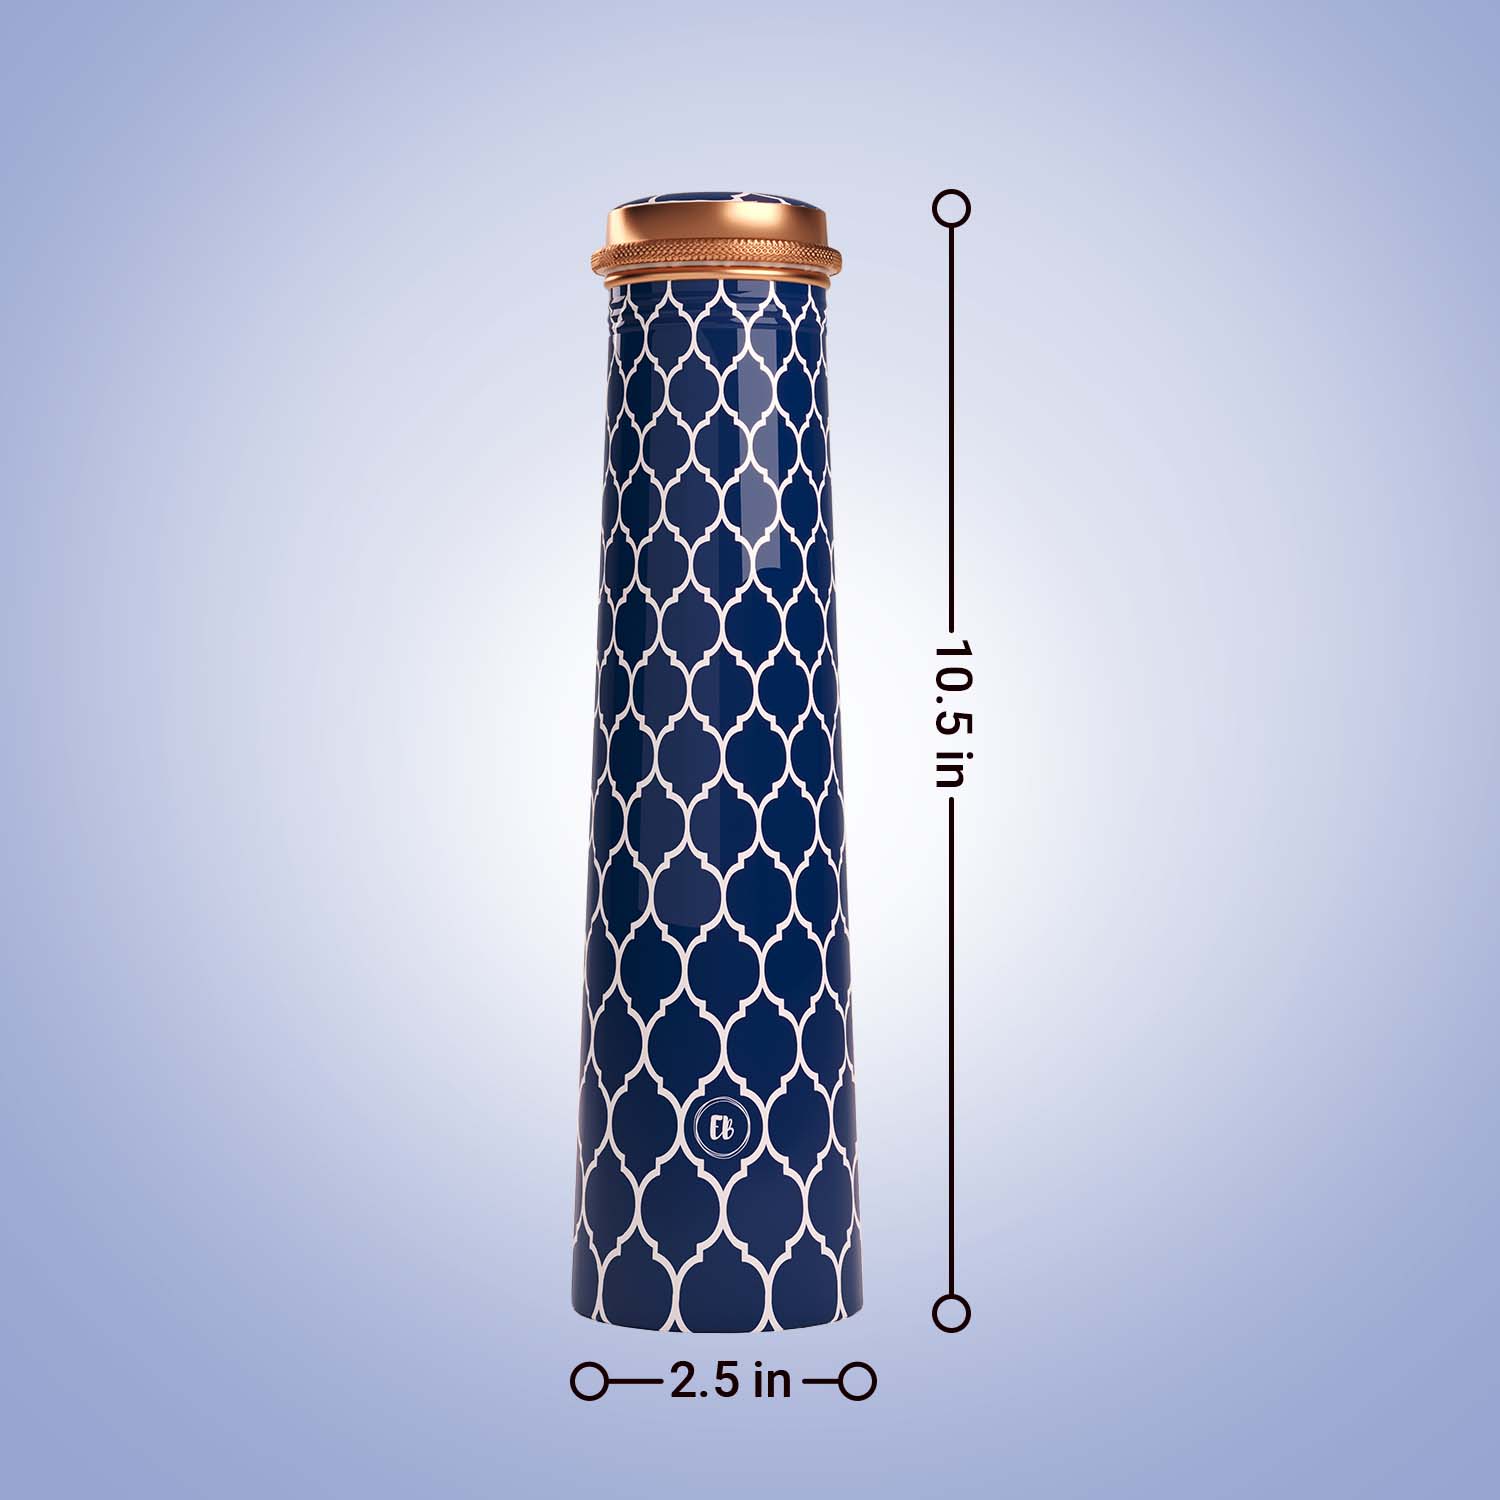 blue white moroccan design copper bottle copper water bottle 750ml printed copper bottle benefits of copper water #color_blue white moroccan